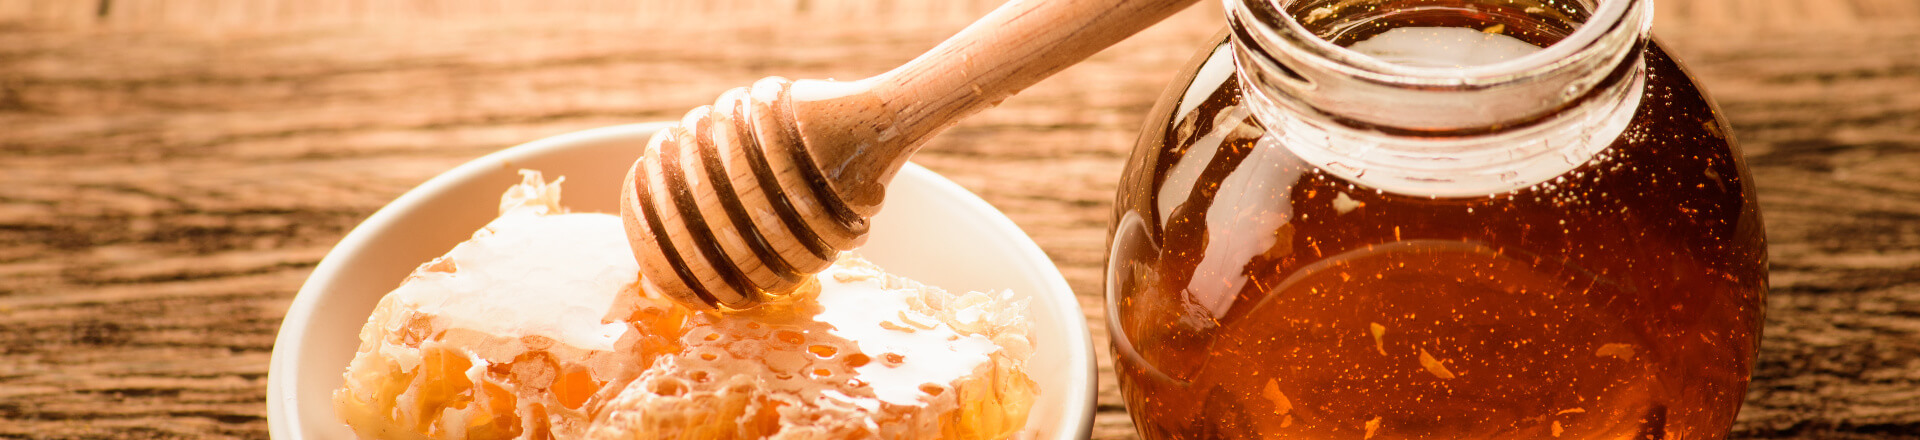 Jar of raw honey has many health benefits